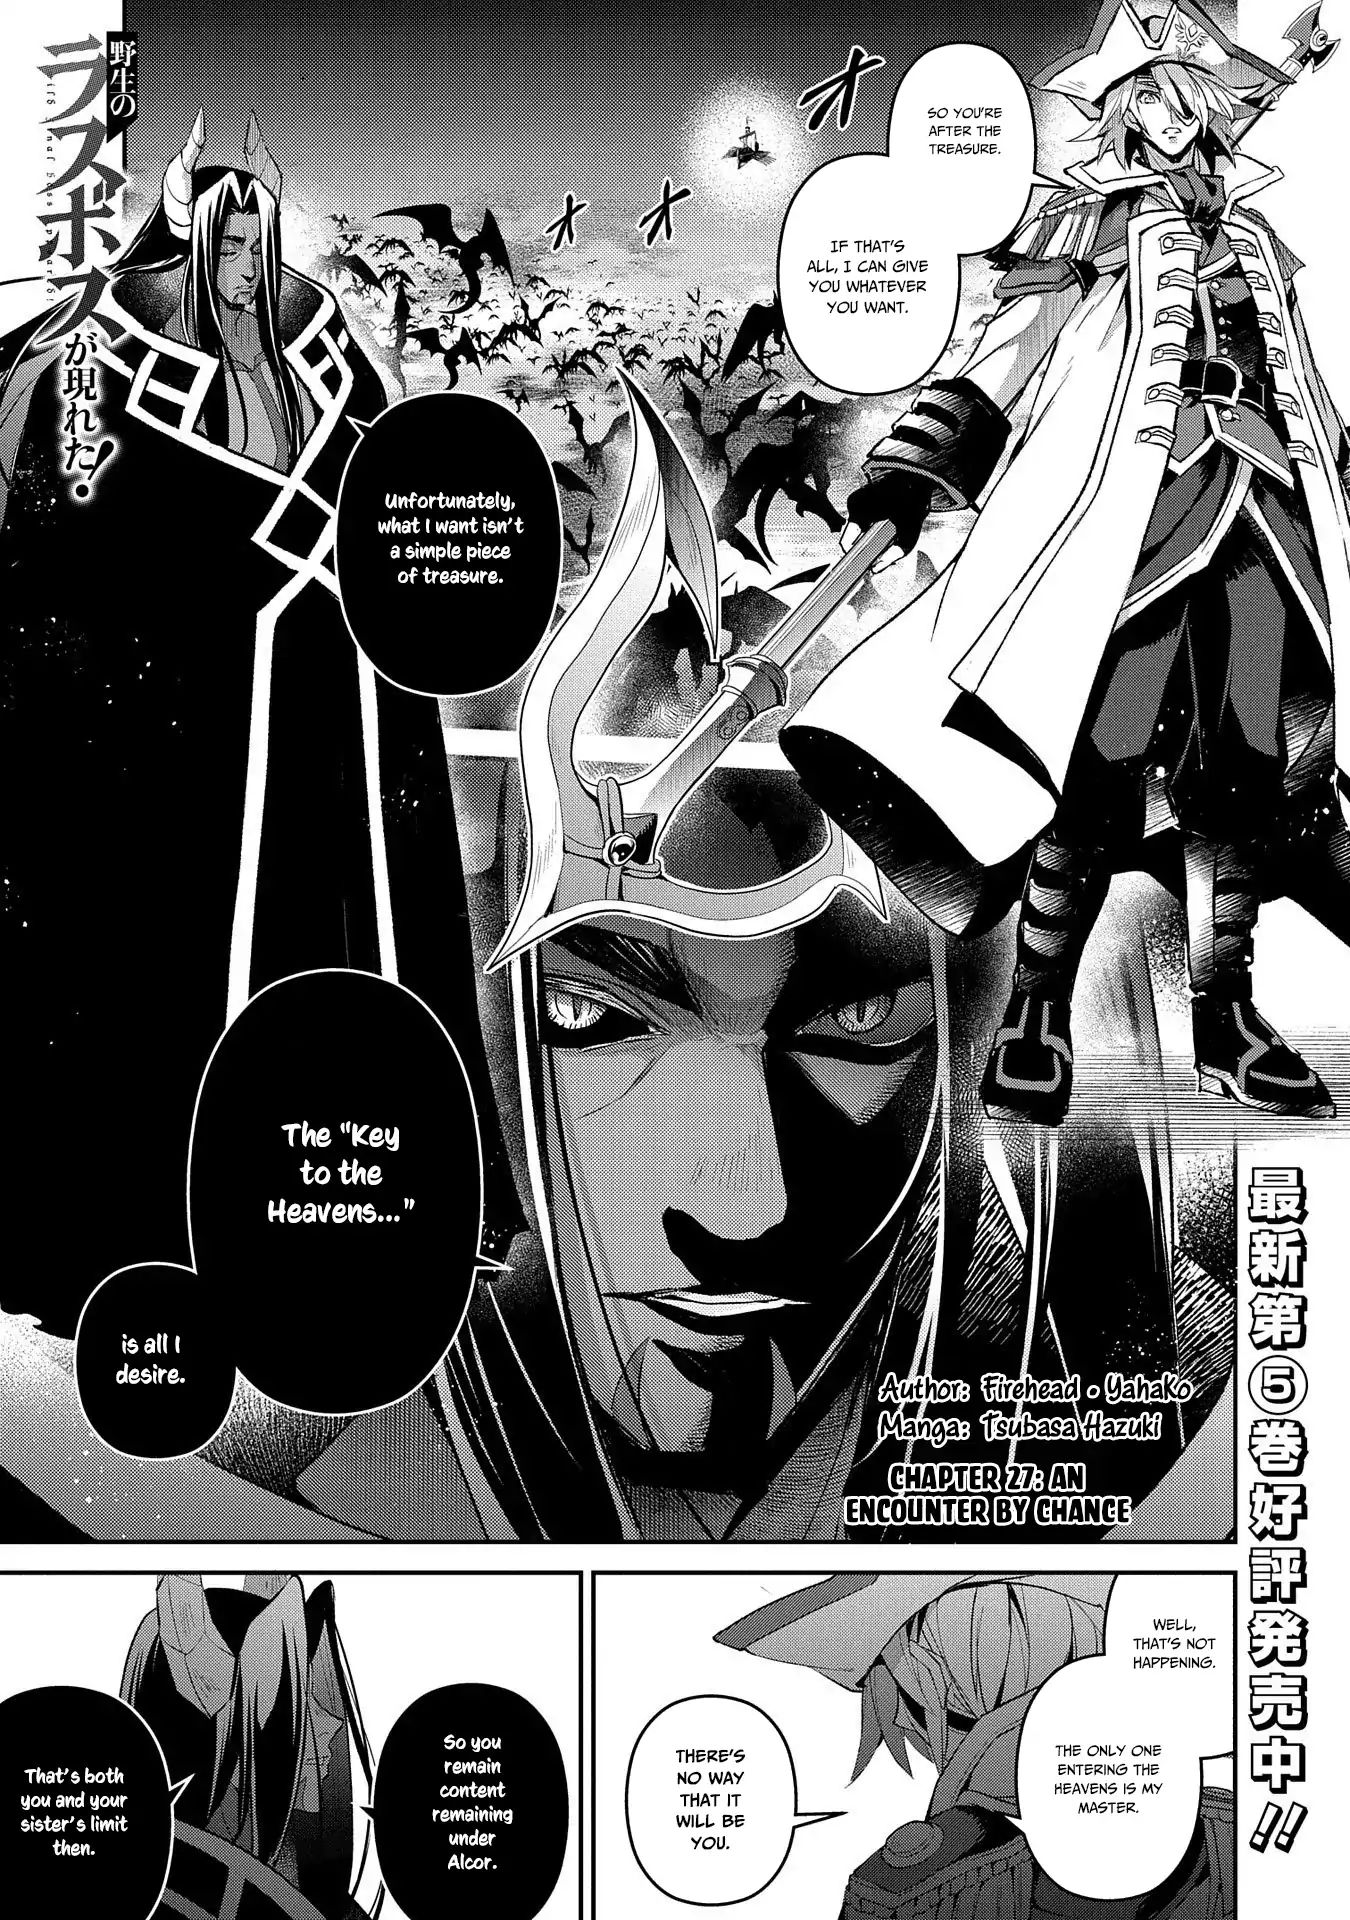 Yasei No Last Boss Ga Arawareta! Vol.1 Chapter 27: An Encounter By Chance - Picture 2